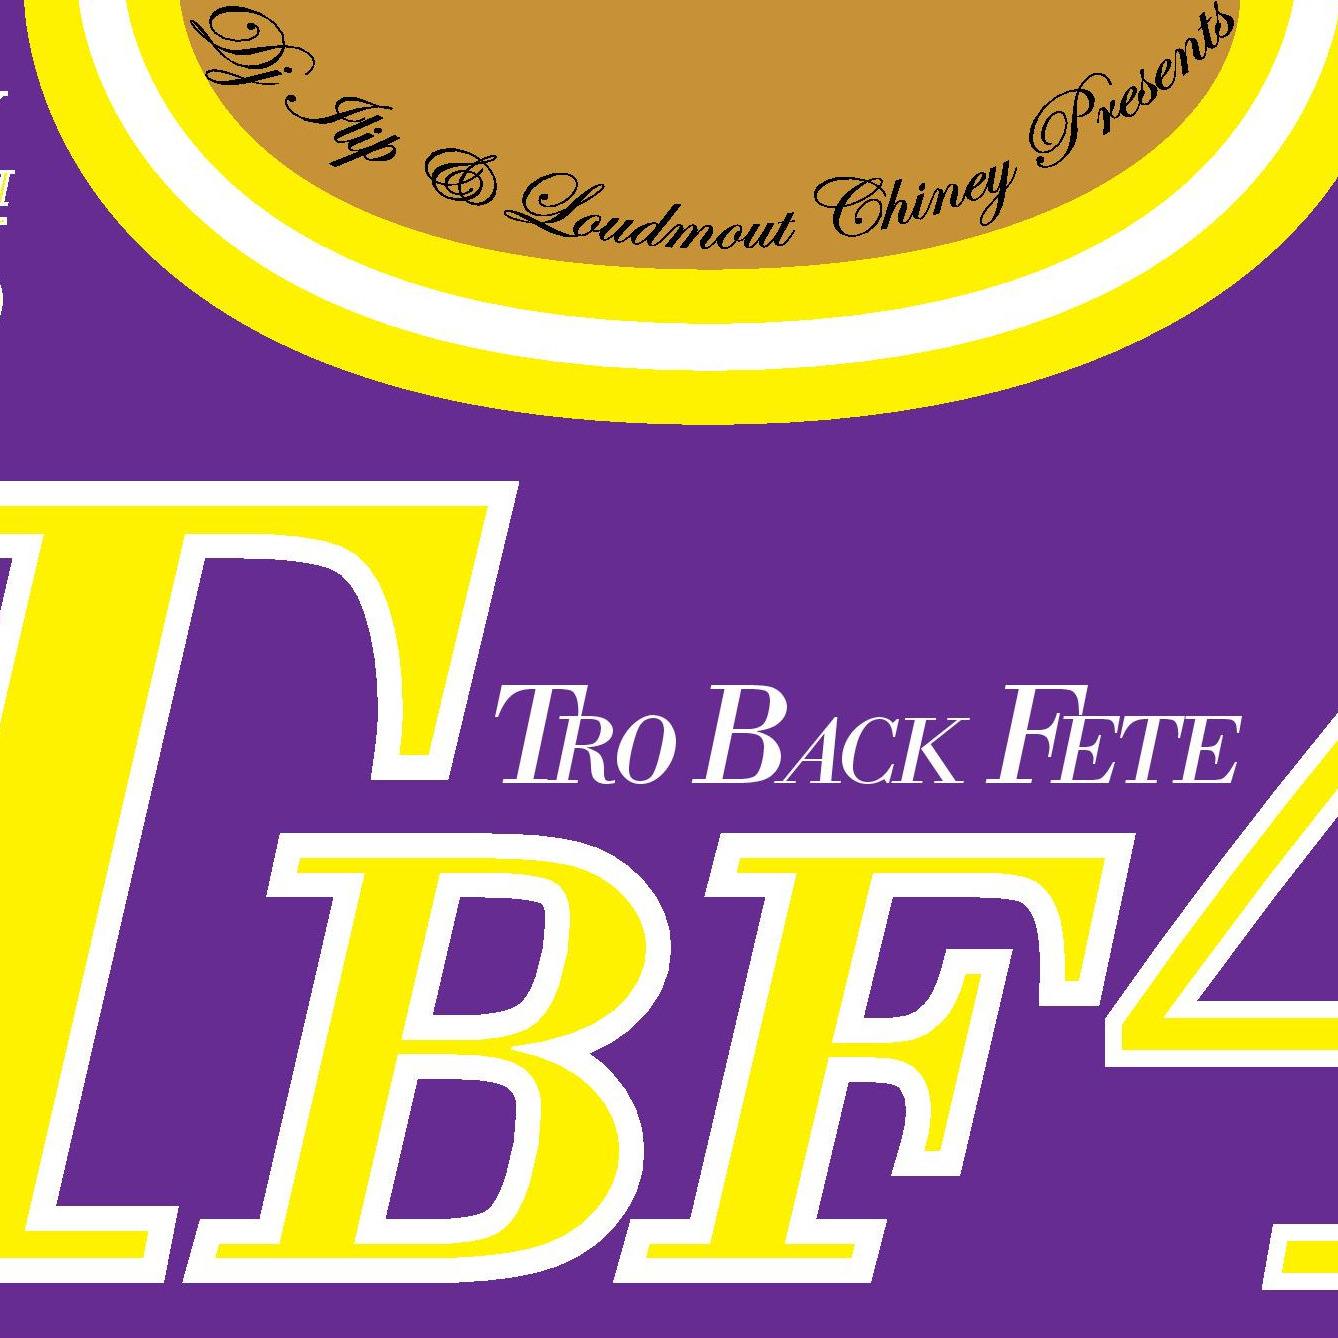 TBF 4 - TRO BACK FETE